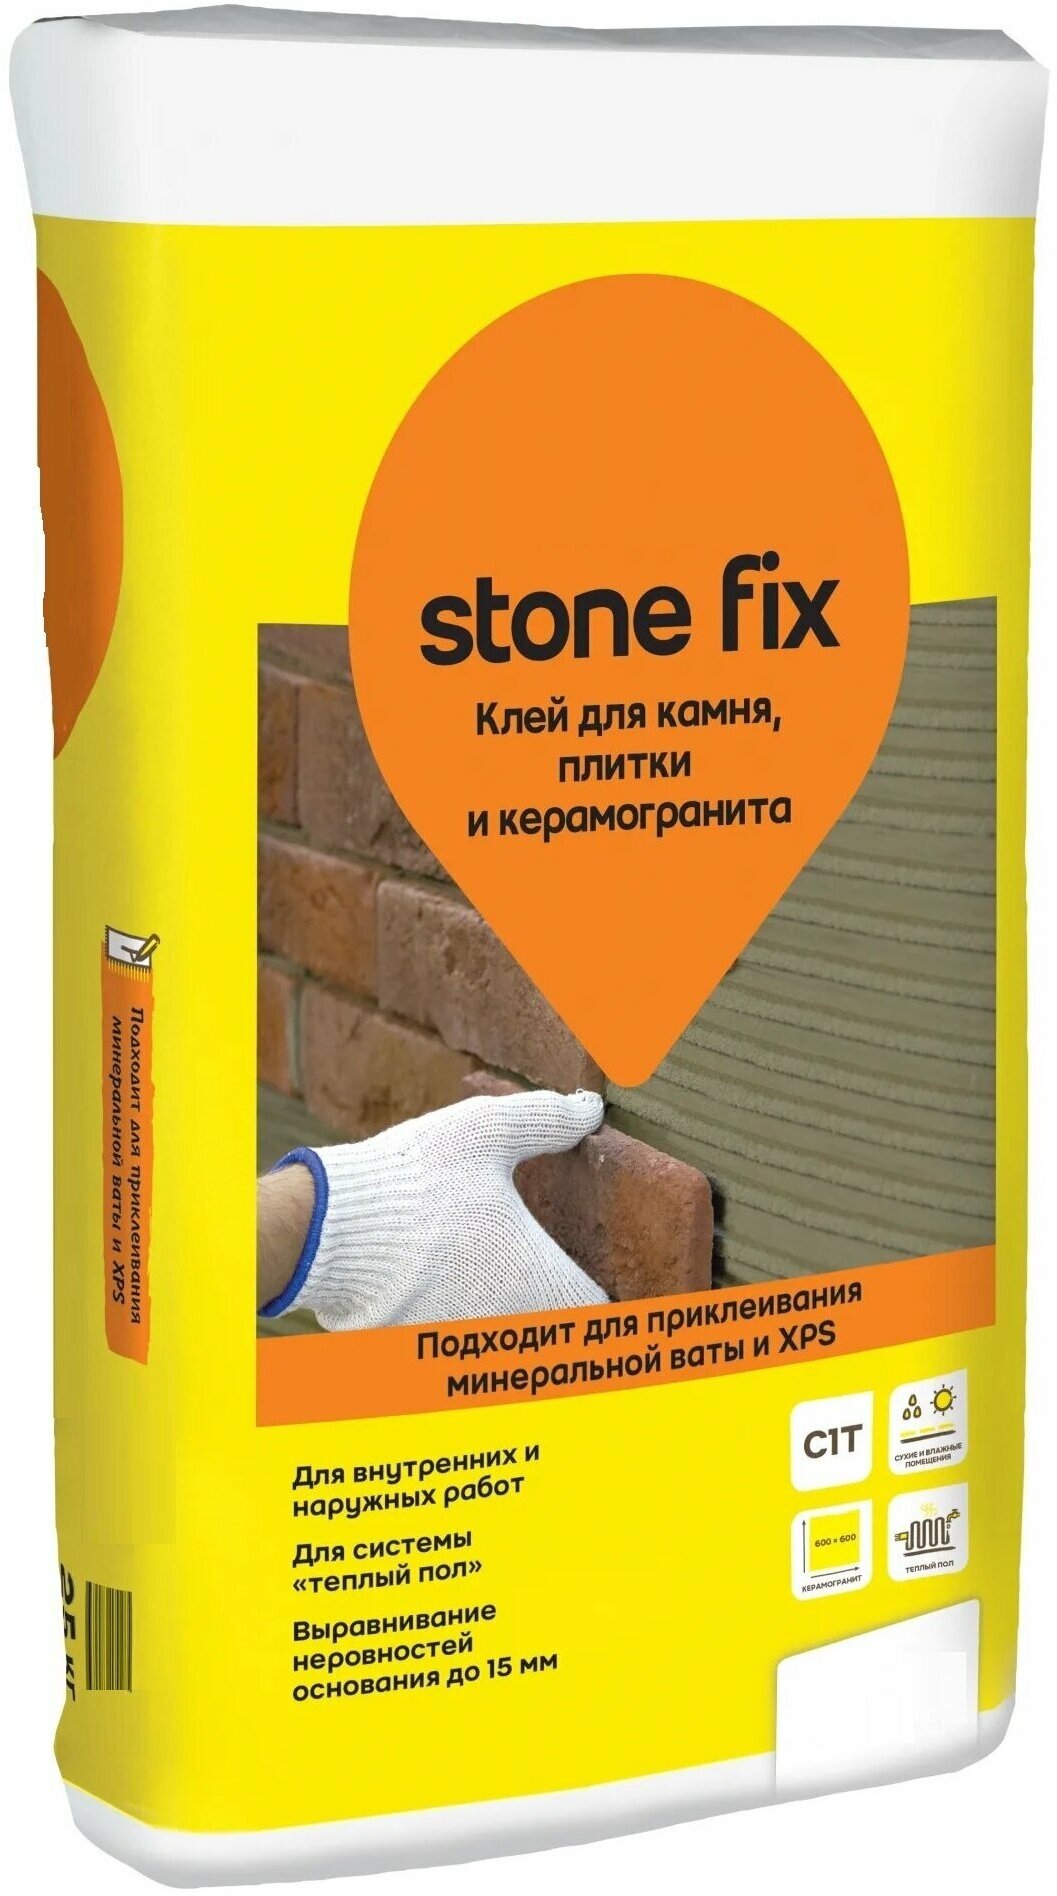 Клей для камня и керамогранита Stone Fix 25 кг, морозостойкий, для надежного приклеивания минеральной ваты и xps, плитки, камня и керамогранита